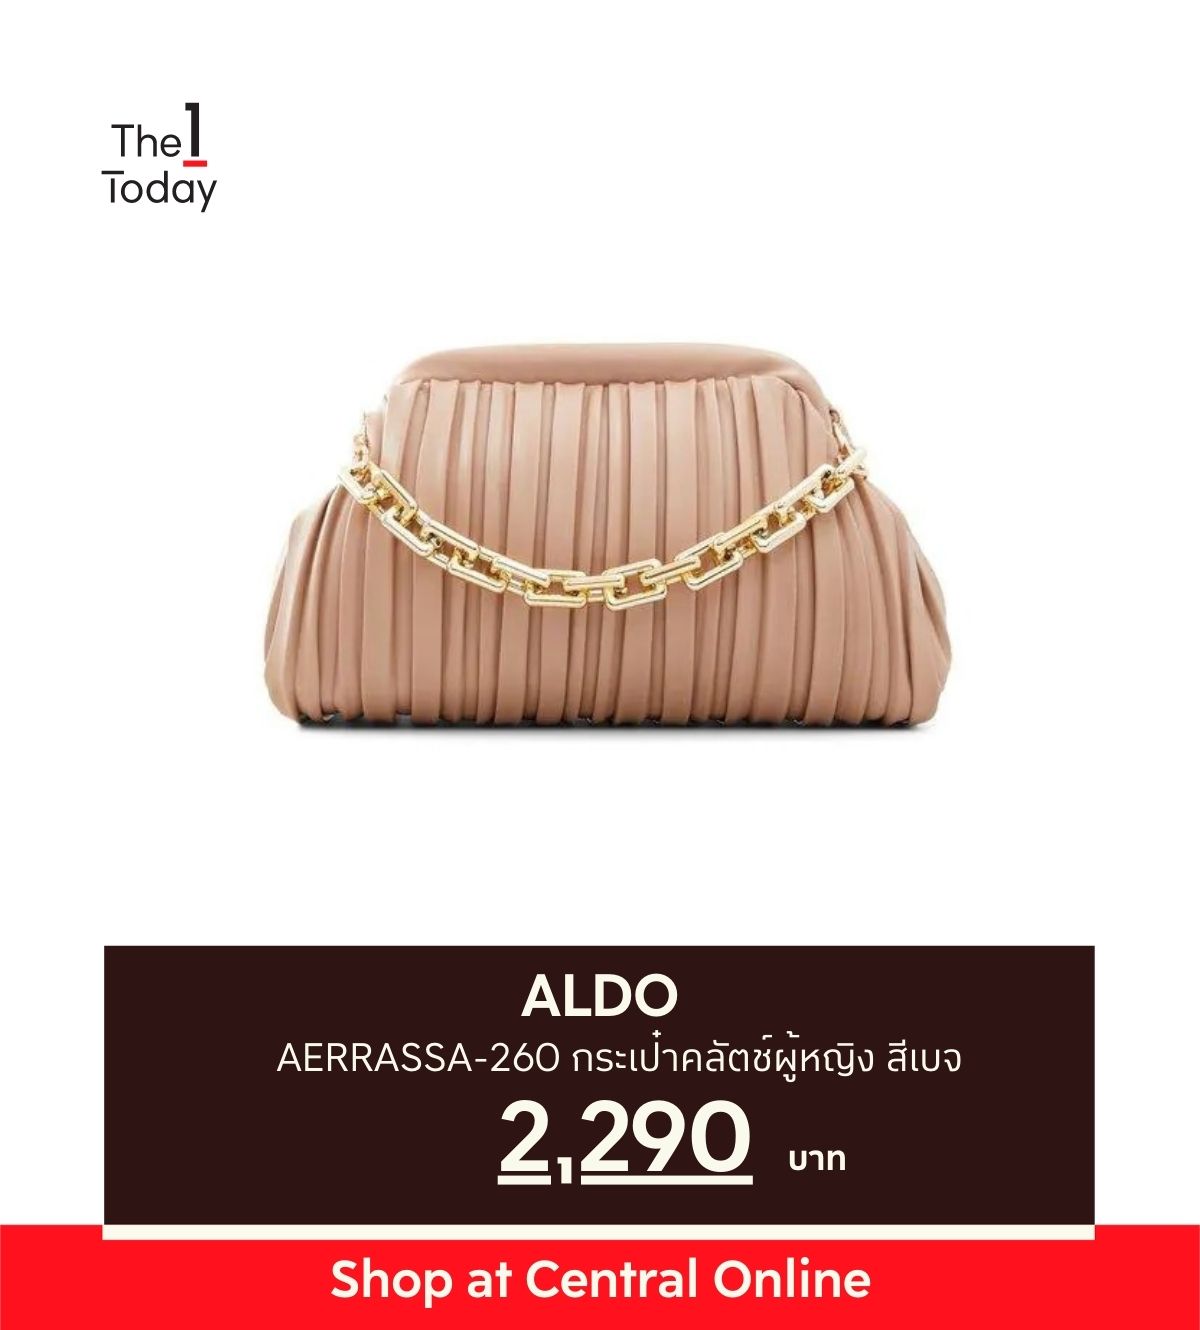 ALDO AERRASSA-260 กระเป๋าคลัตช์ผู้หญิง สีเบจ ลด 20% จากราคาปกติ 2,290 บาท เหลือ 1,832 บาท